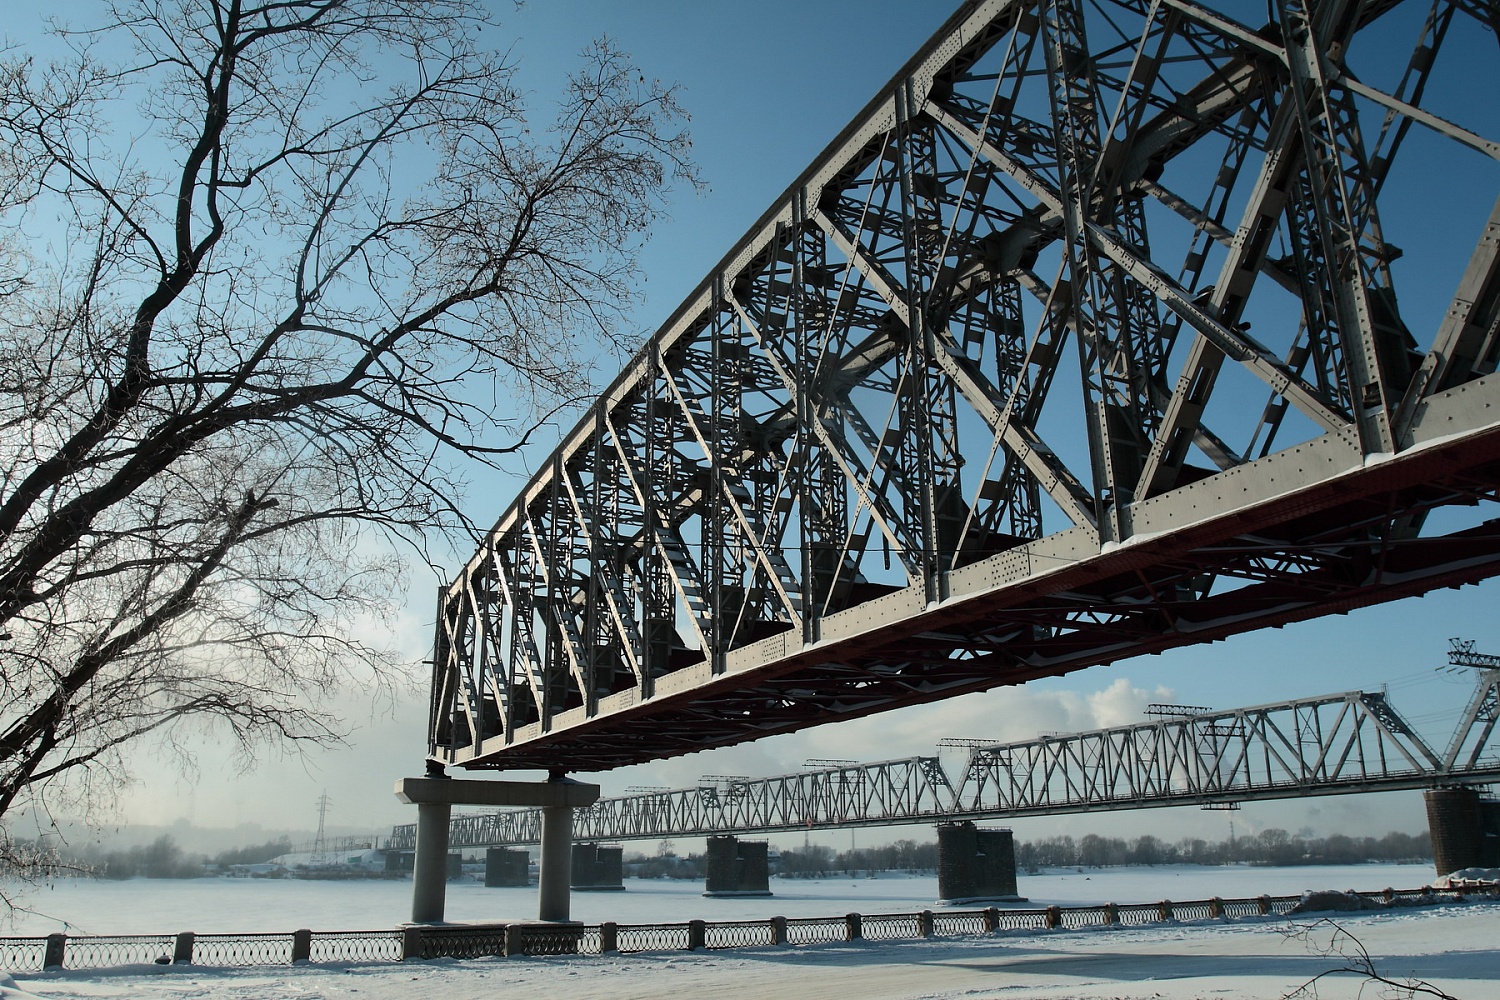 Форма обь. Железнодорожный мост через Обь Новосибирск. Первый Железнодорожный мост через Обь. Первый Железнодорожный мост Новосибирск. ЖД мост через реку Обь в Новосибирске.